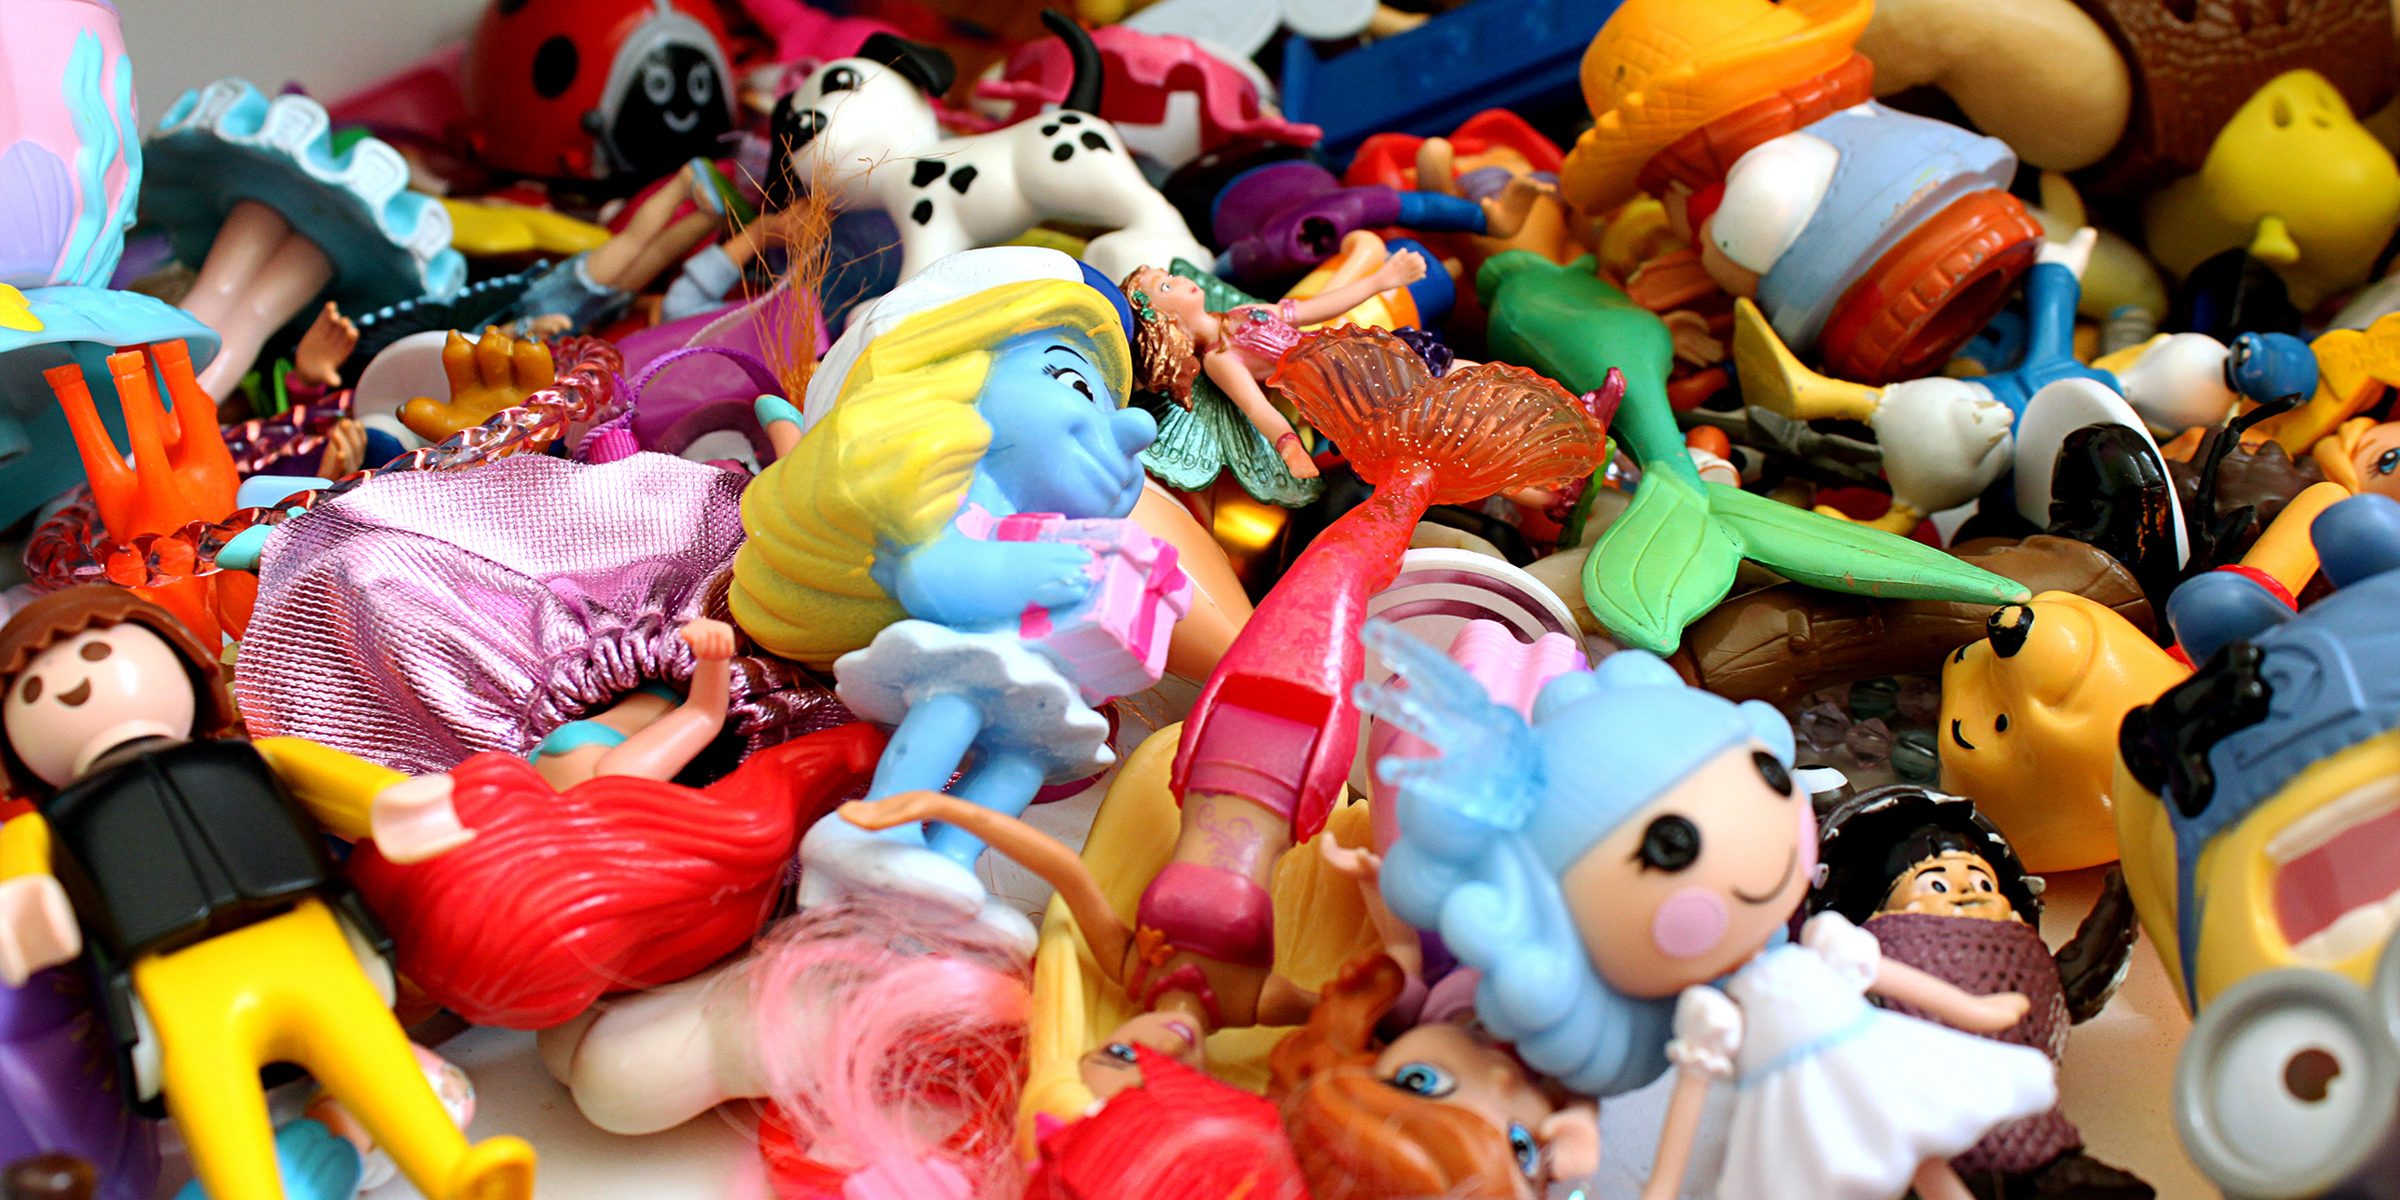 Ein Haufen Spielzeug | Quelle: Shutterstock